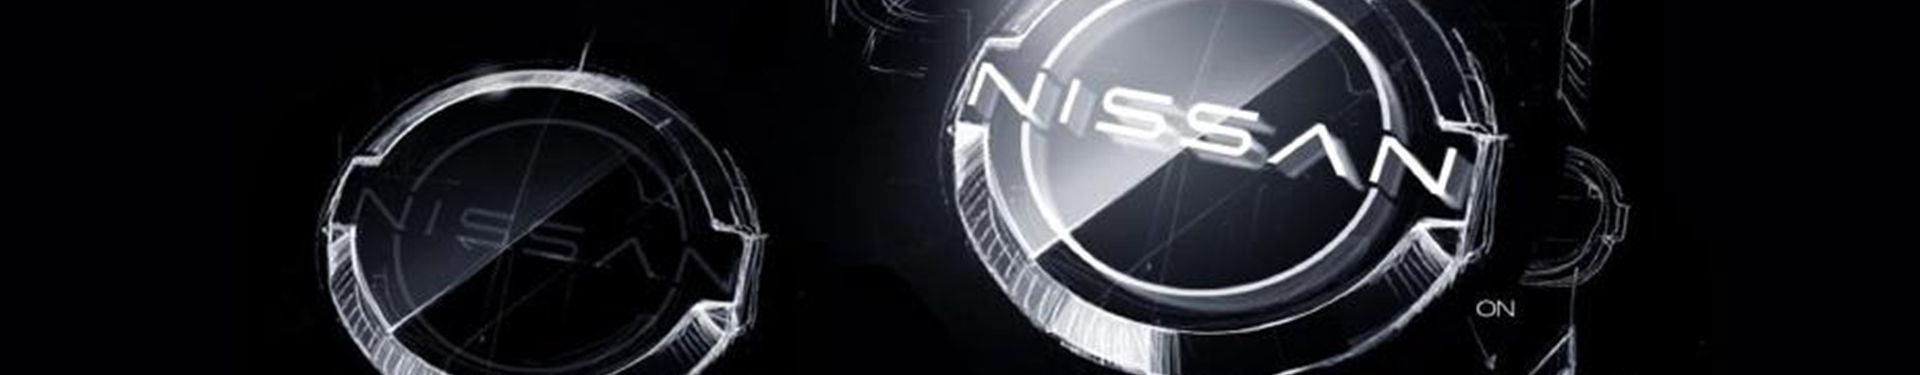 Novo logotipo da Nissan sinaliza um novo horizonte